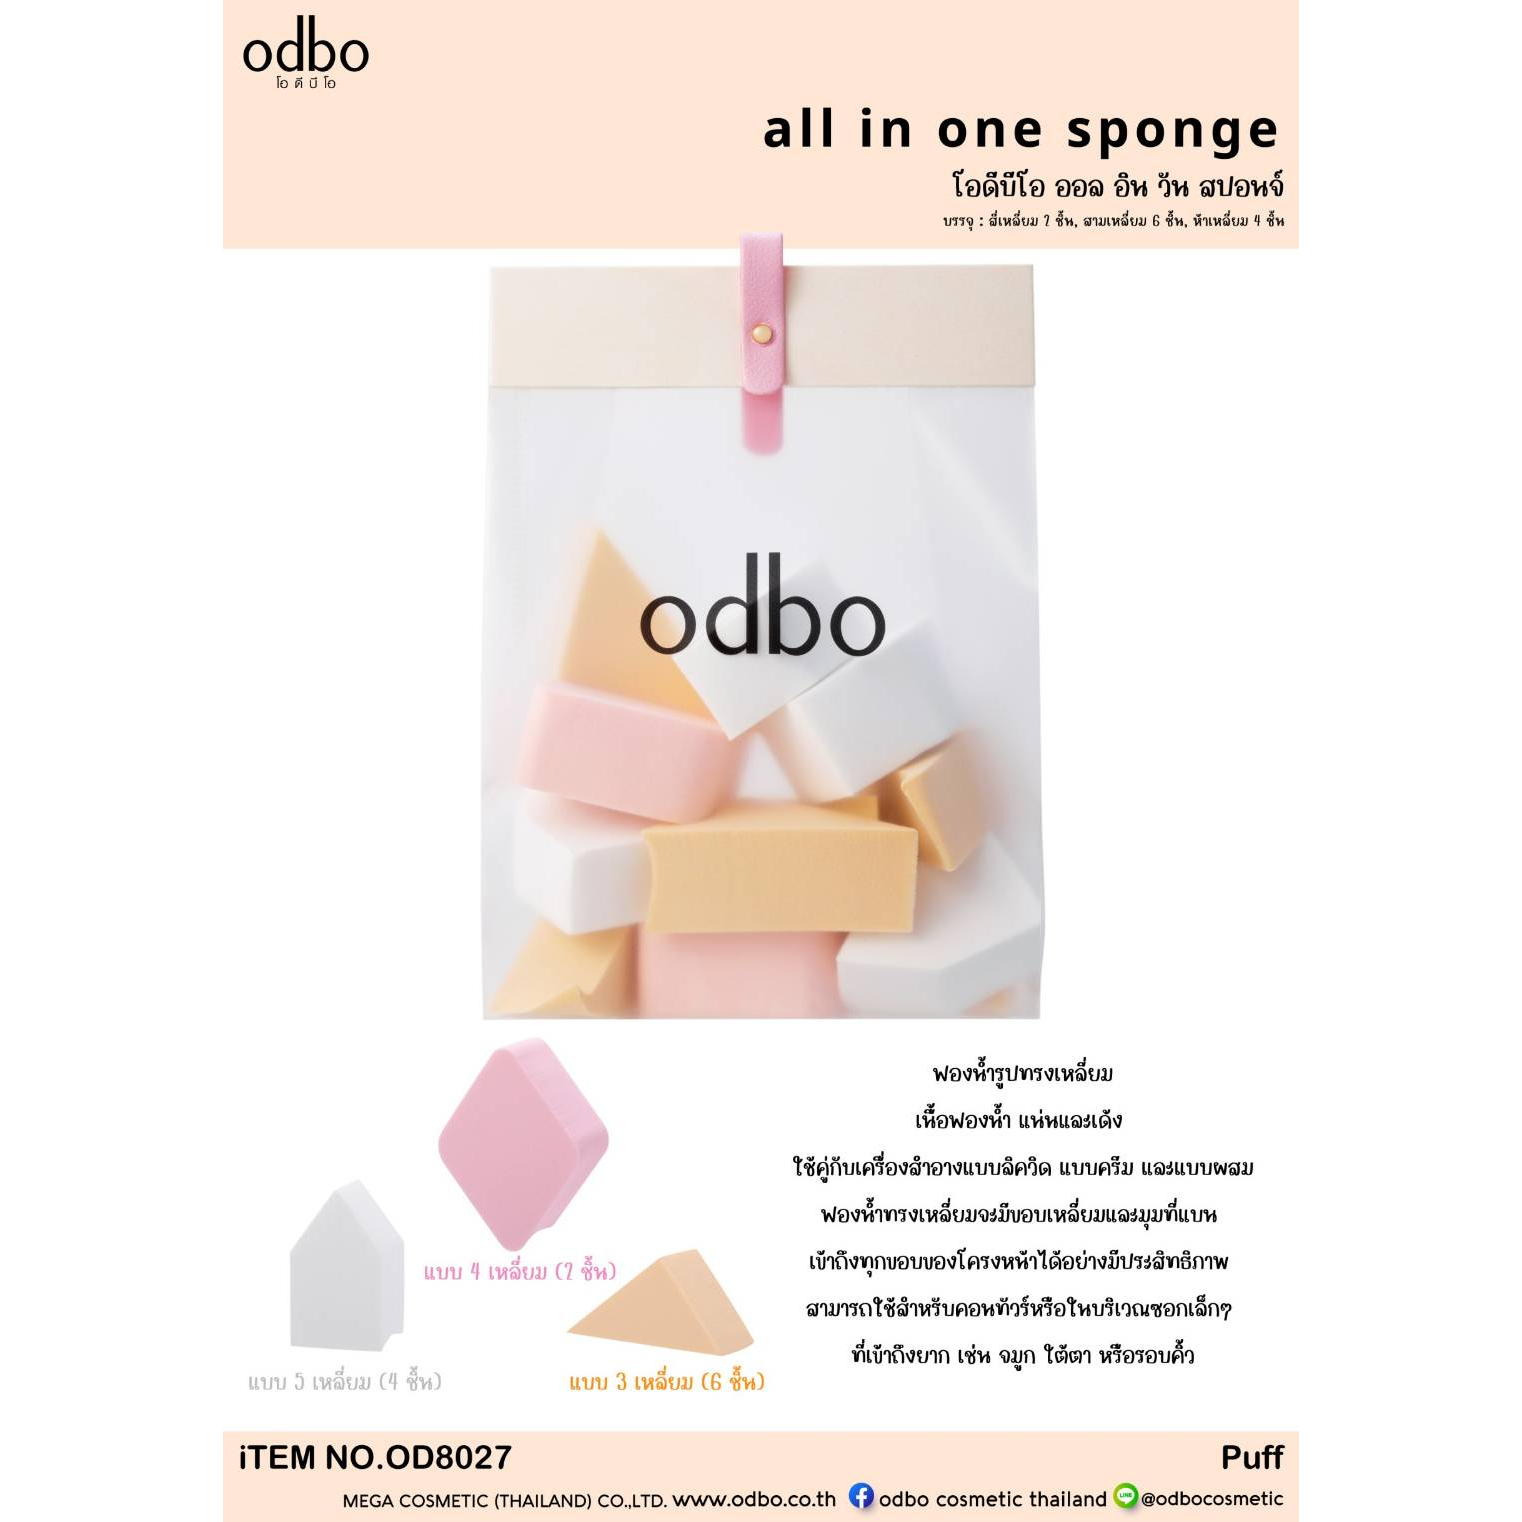 od8027-odbo-all-in-one-sponge-โอดีบีโอ-ออล-อิน-วัน-สปออนจ์-ฟองน้ำ-รูปทรงเหลี่ยม